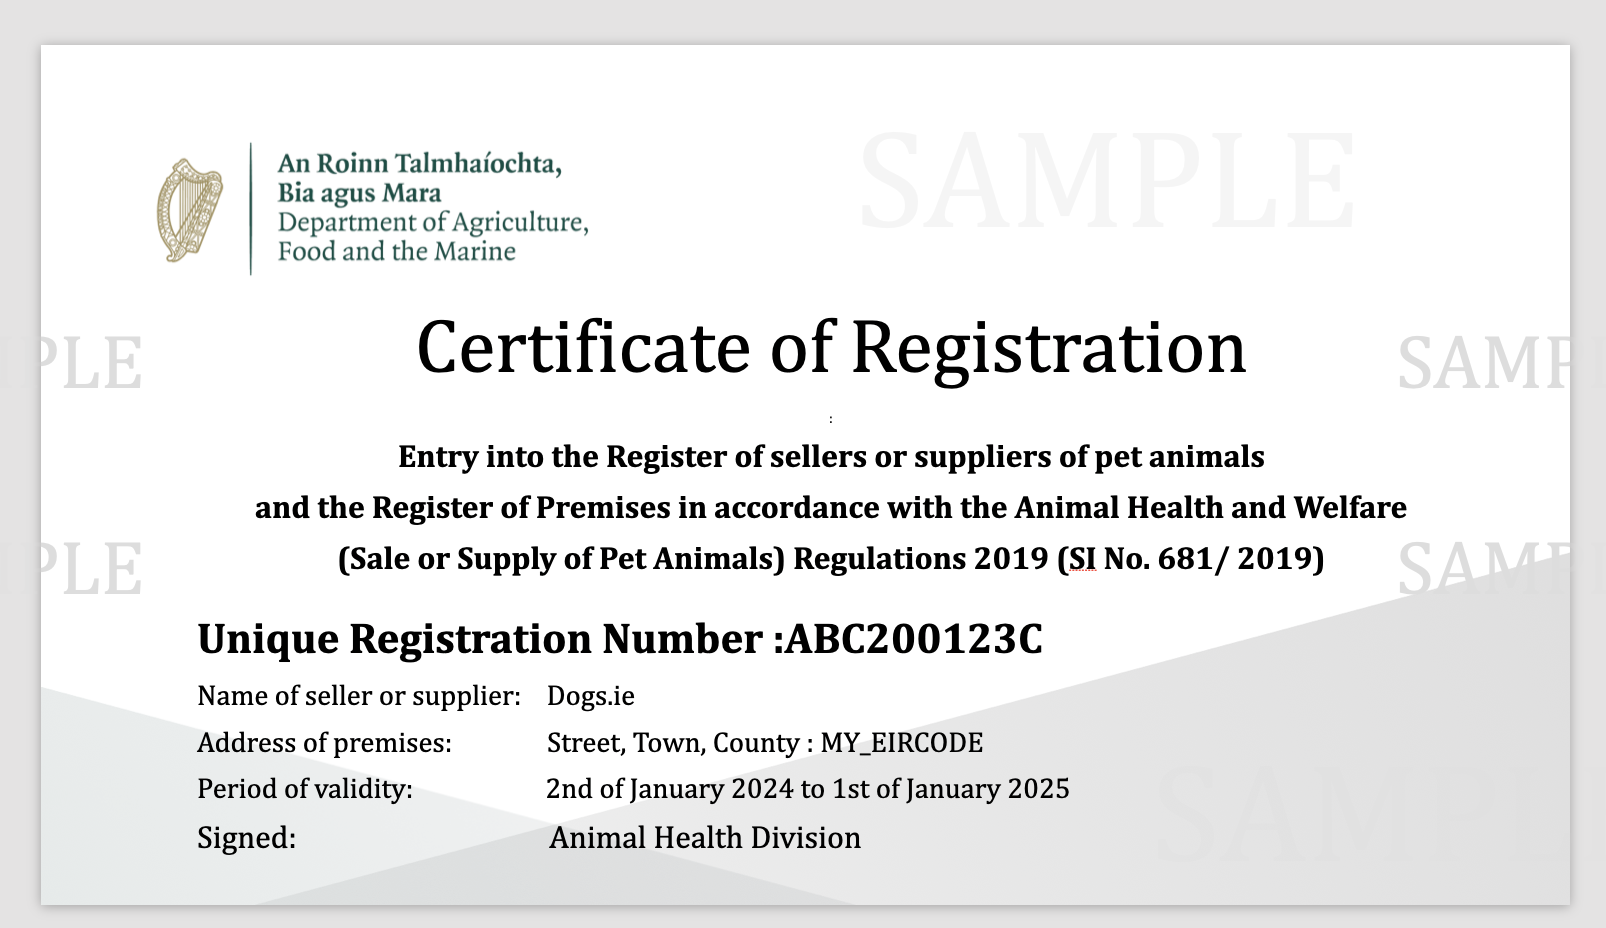 Registered Seller of Pets certificate of registration